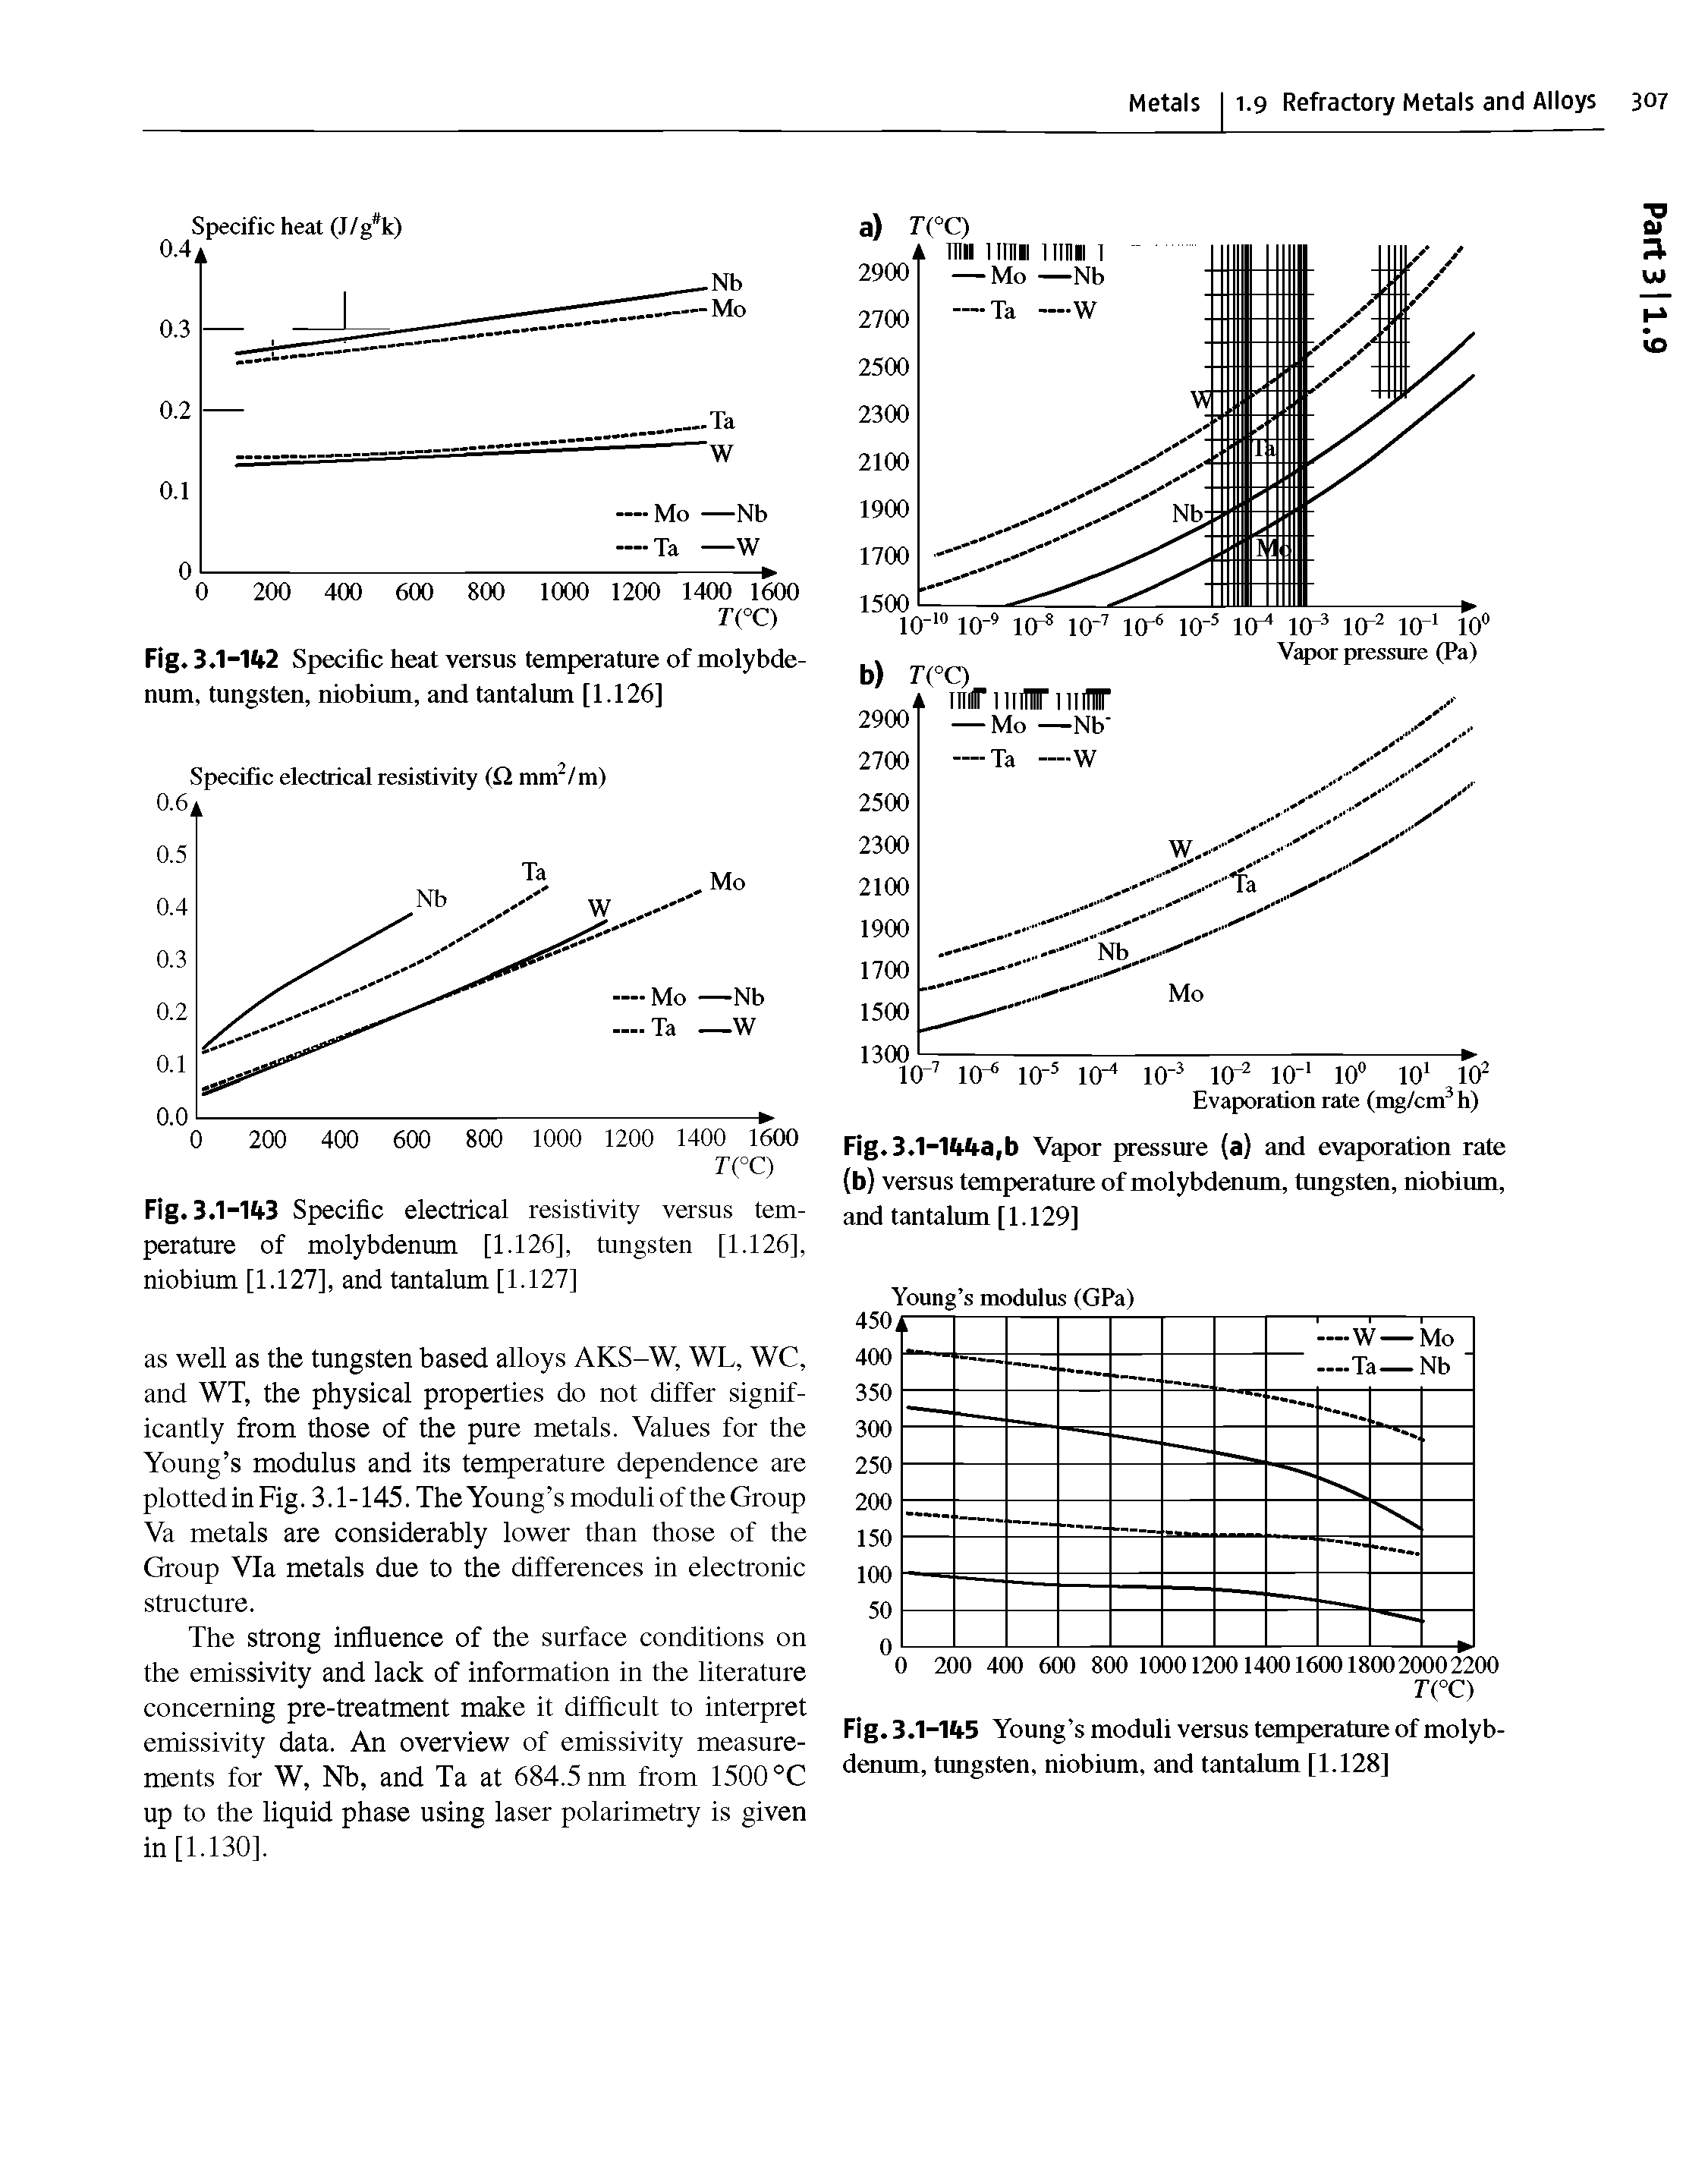 Fig. 3.1-1fi3 Specific electrical resistivity versus temperature of molybdenum [1.126], tungsten [1.126], niobium [1.127], and tantalum [1.127]...